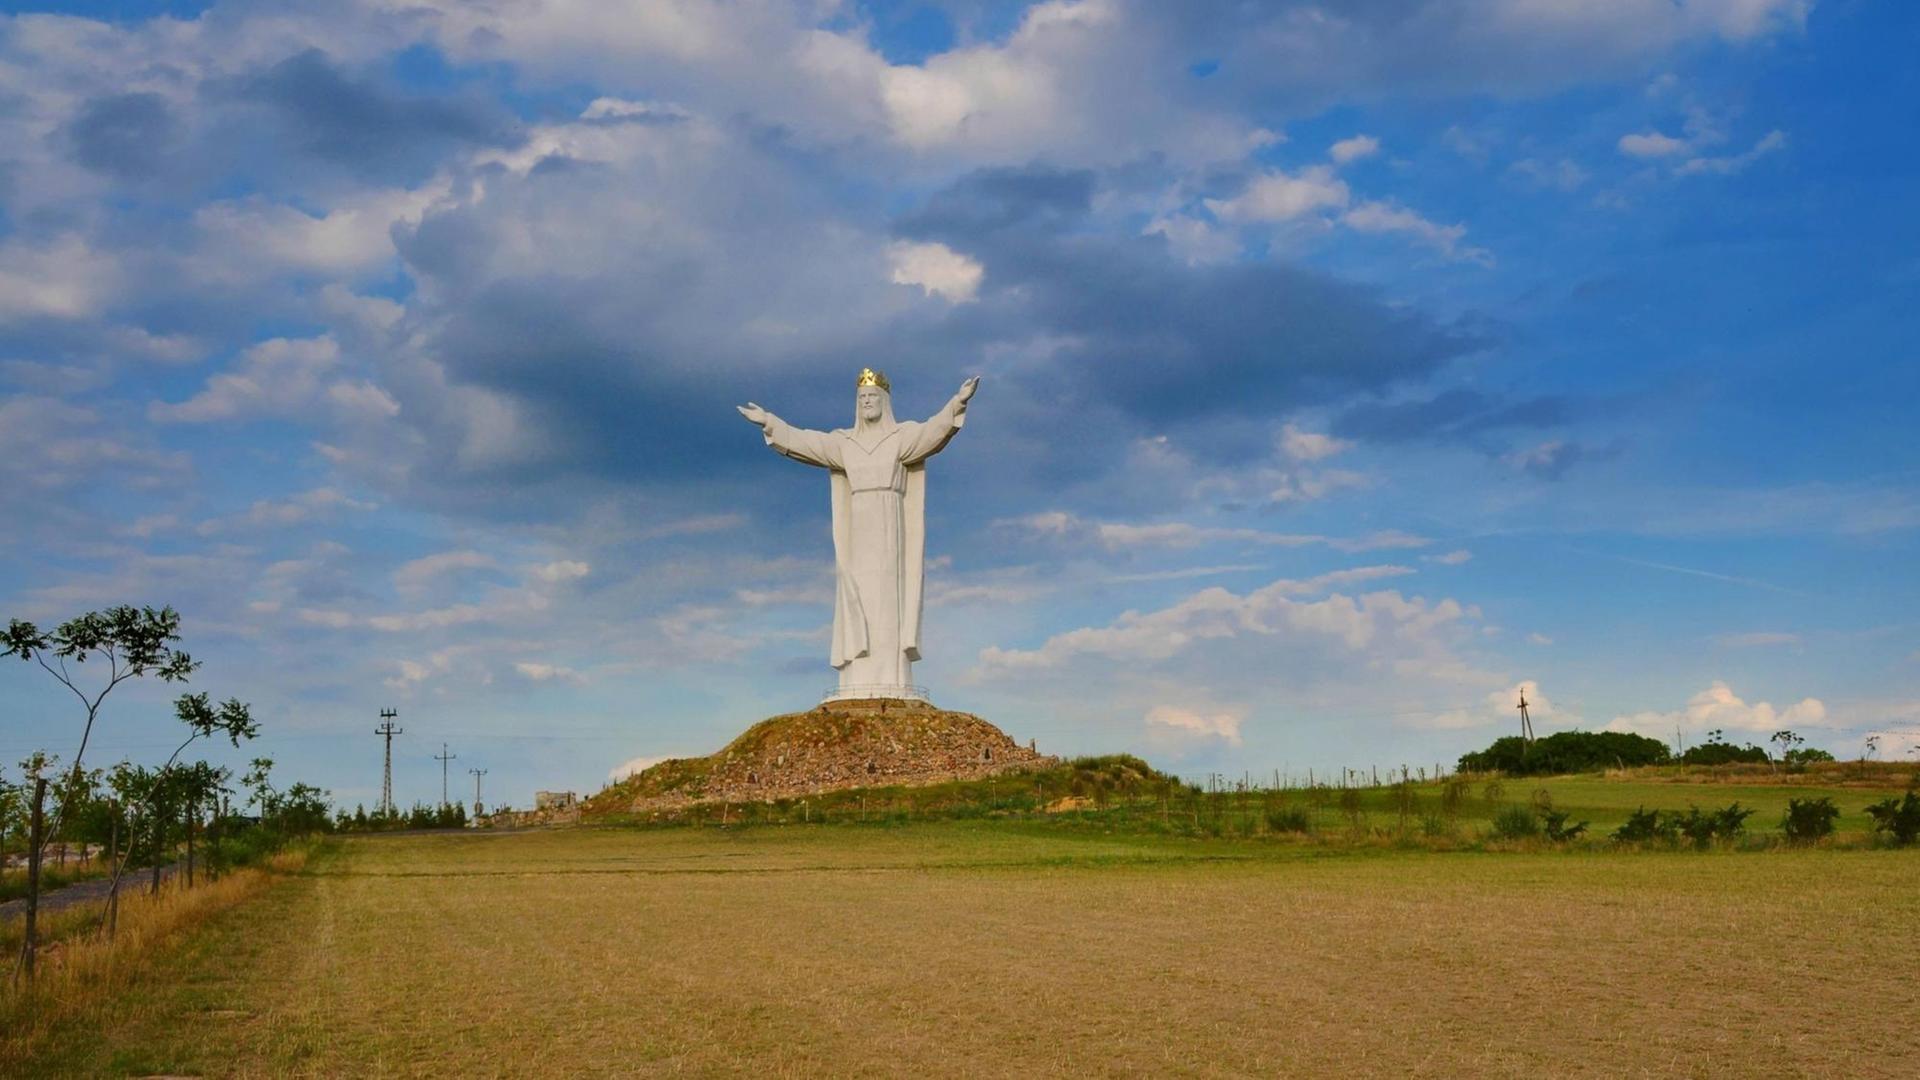 Die golden gekrönte Christusstatue, erbaut in der Stadt Swiebodzin in Woiwodschaft Lubusz im Jahr 2010, gilt als die höchste Jesusstatue der Welt gilt. Um sie herum sind Felder zu sehen.